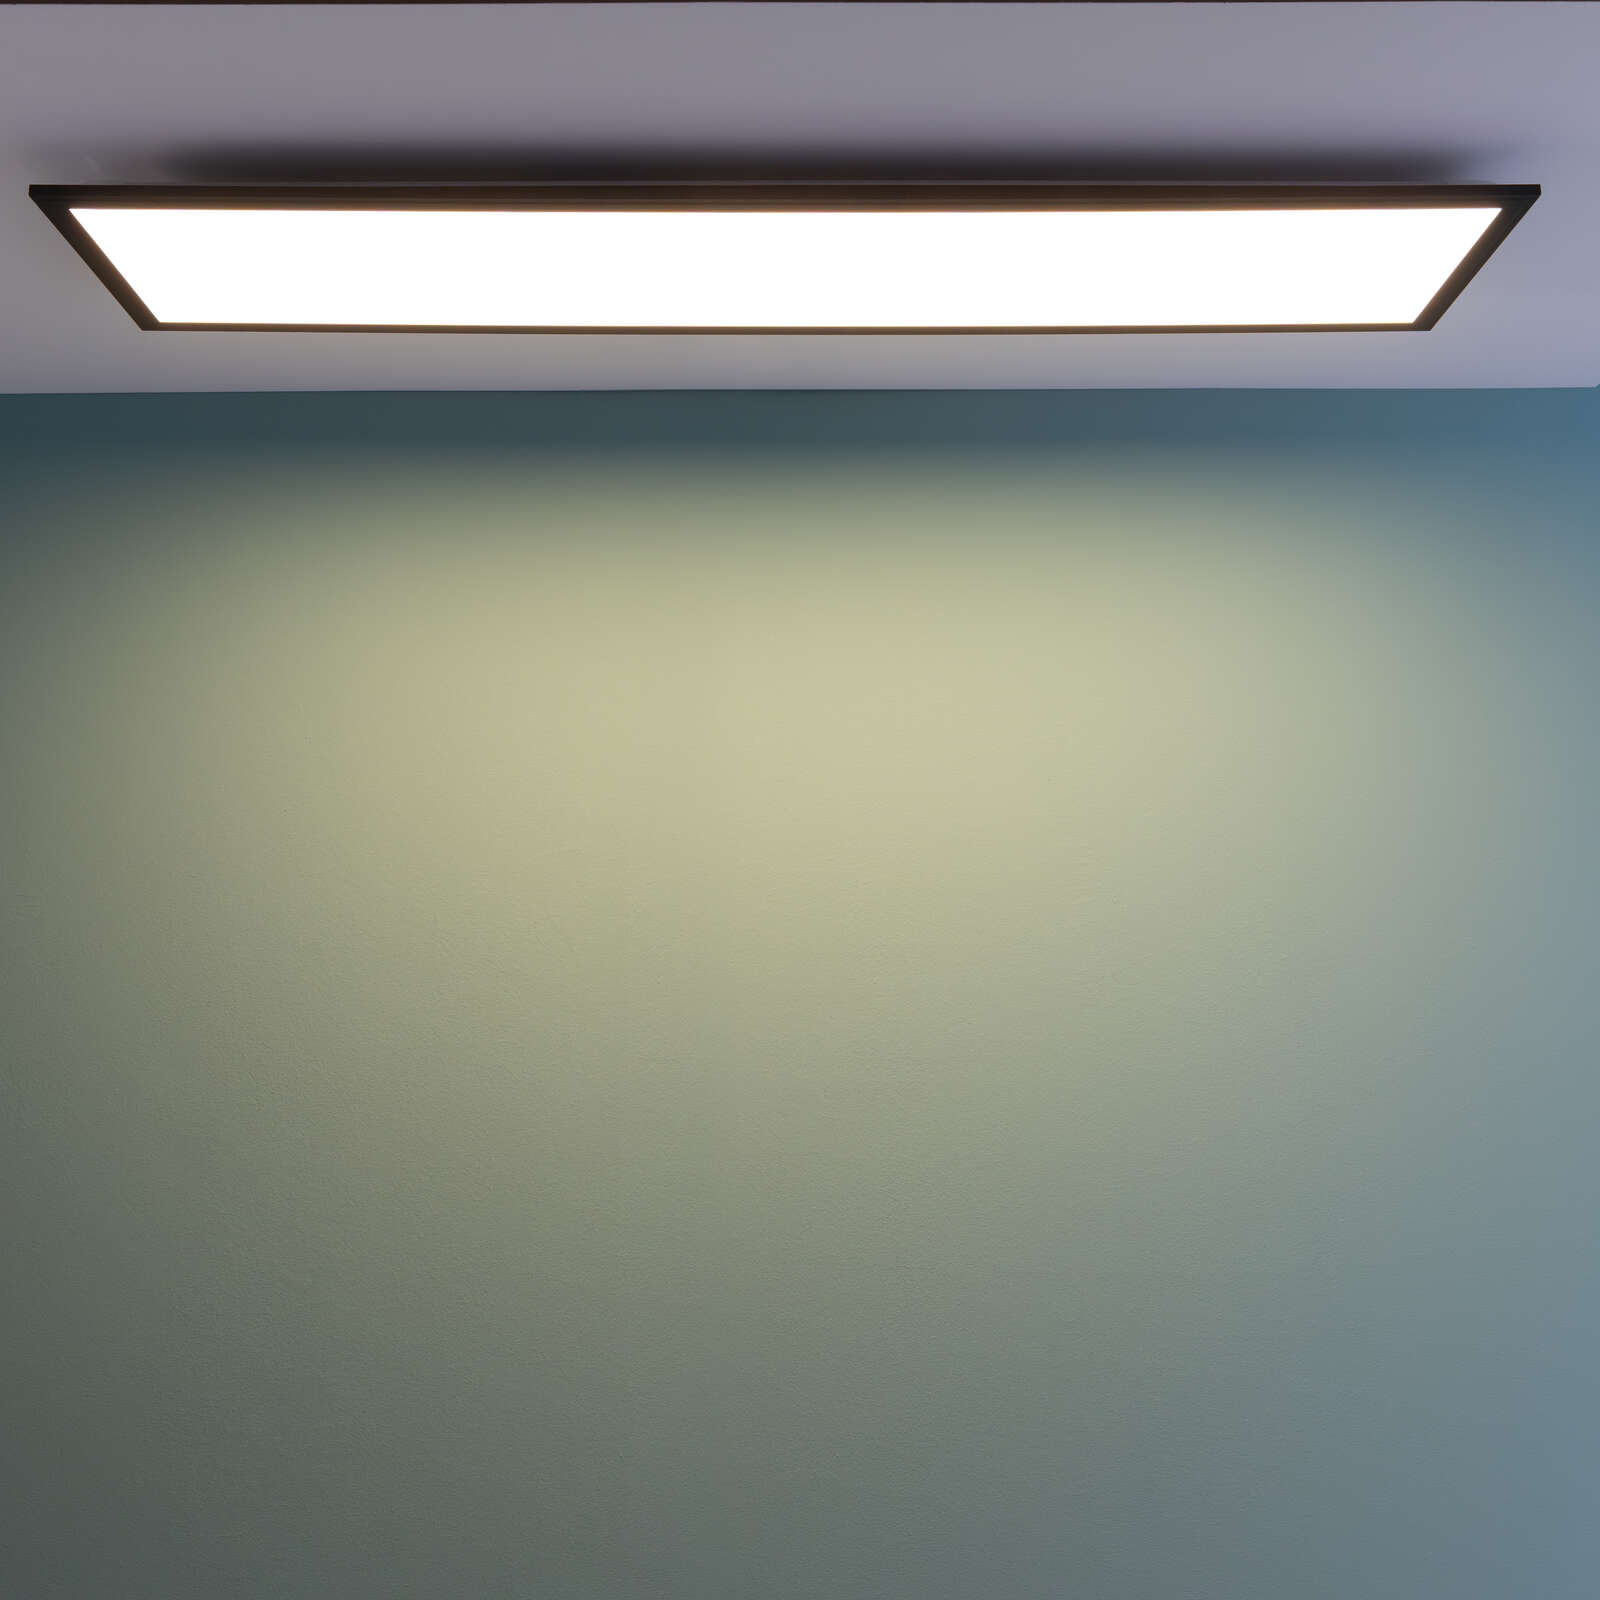             Plastic ceiling light - Fridolin - Black
        